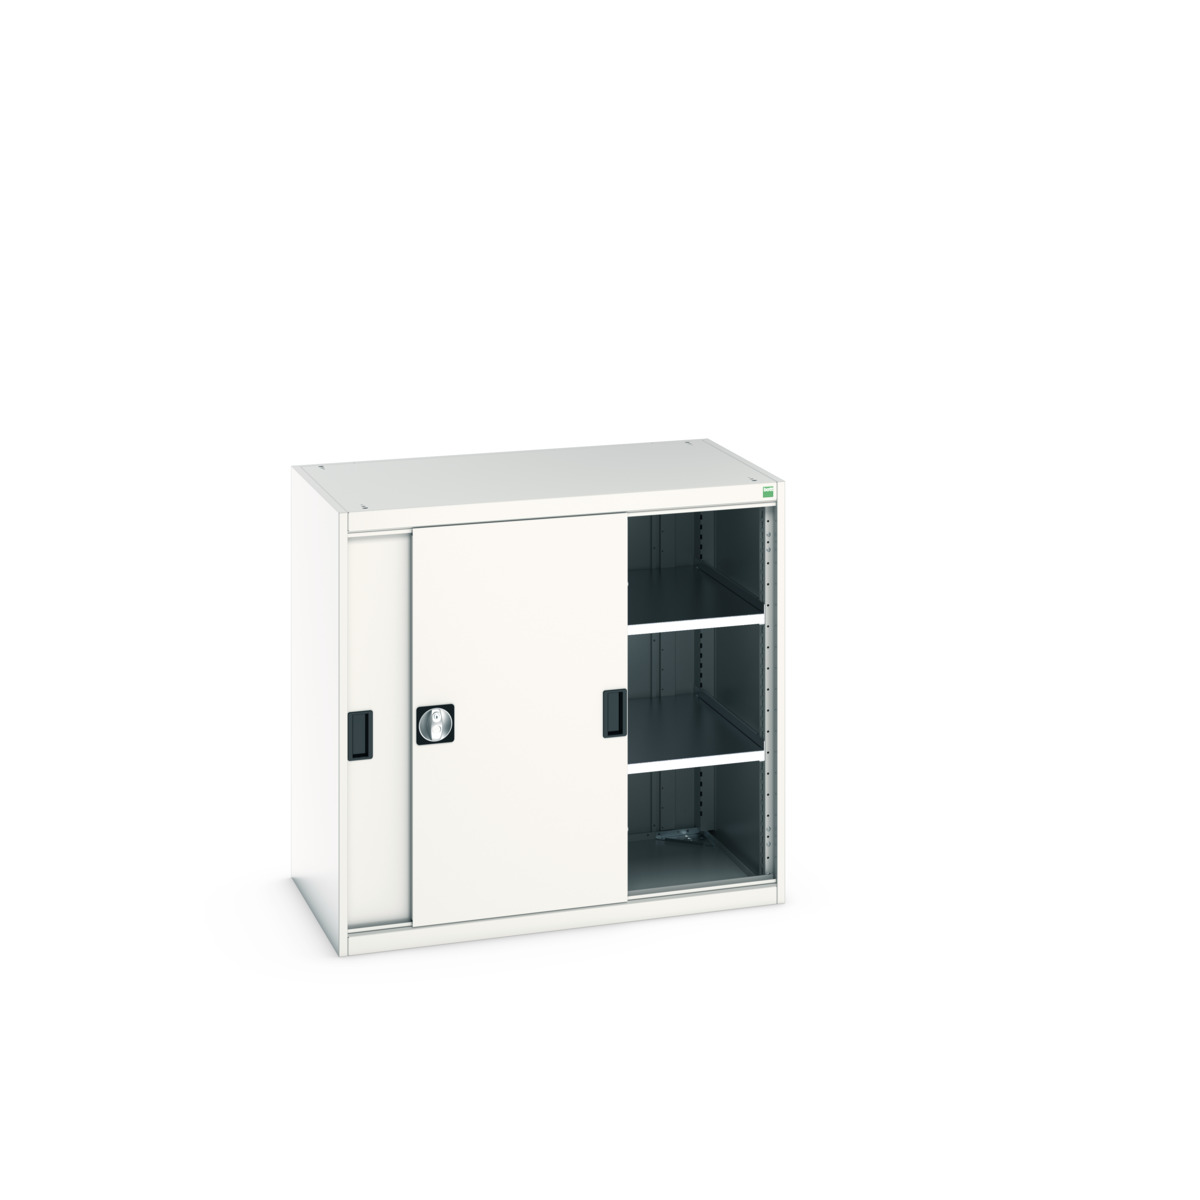 40021138.16V - cubio cupboard